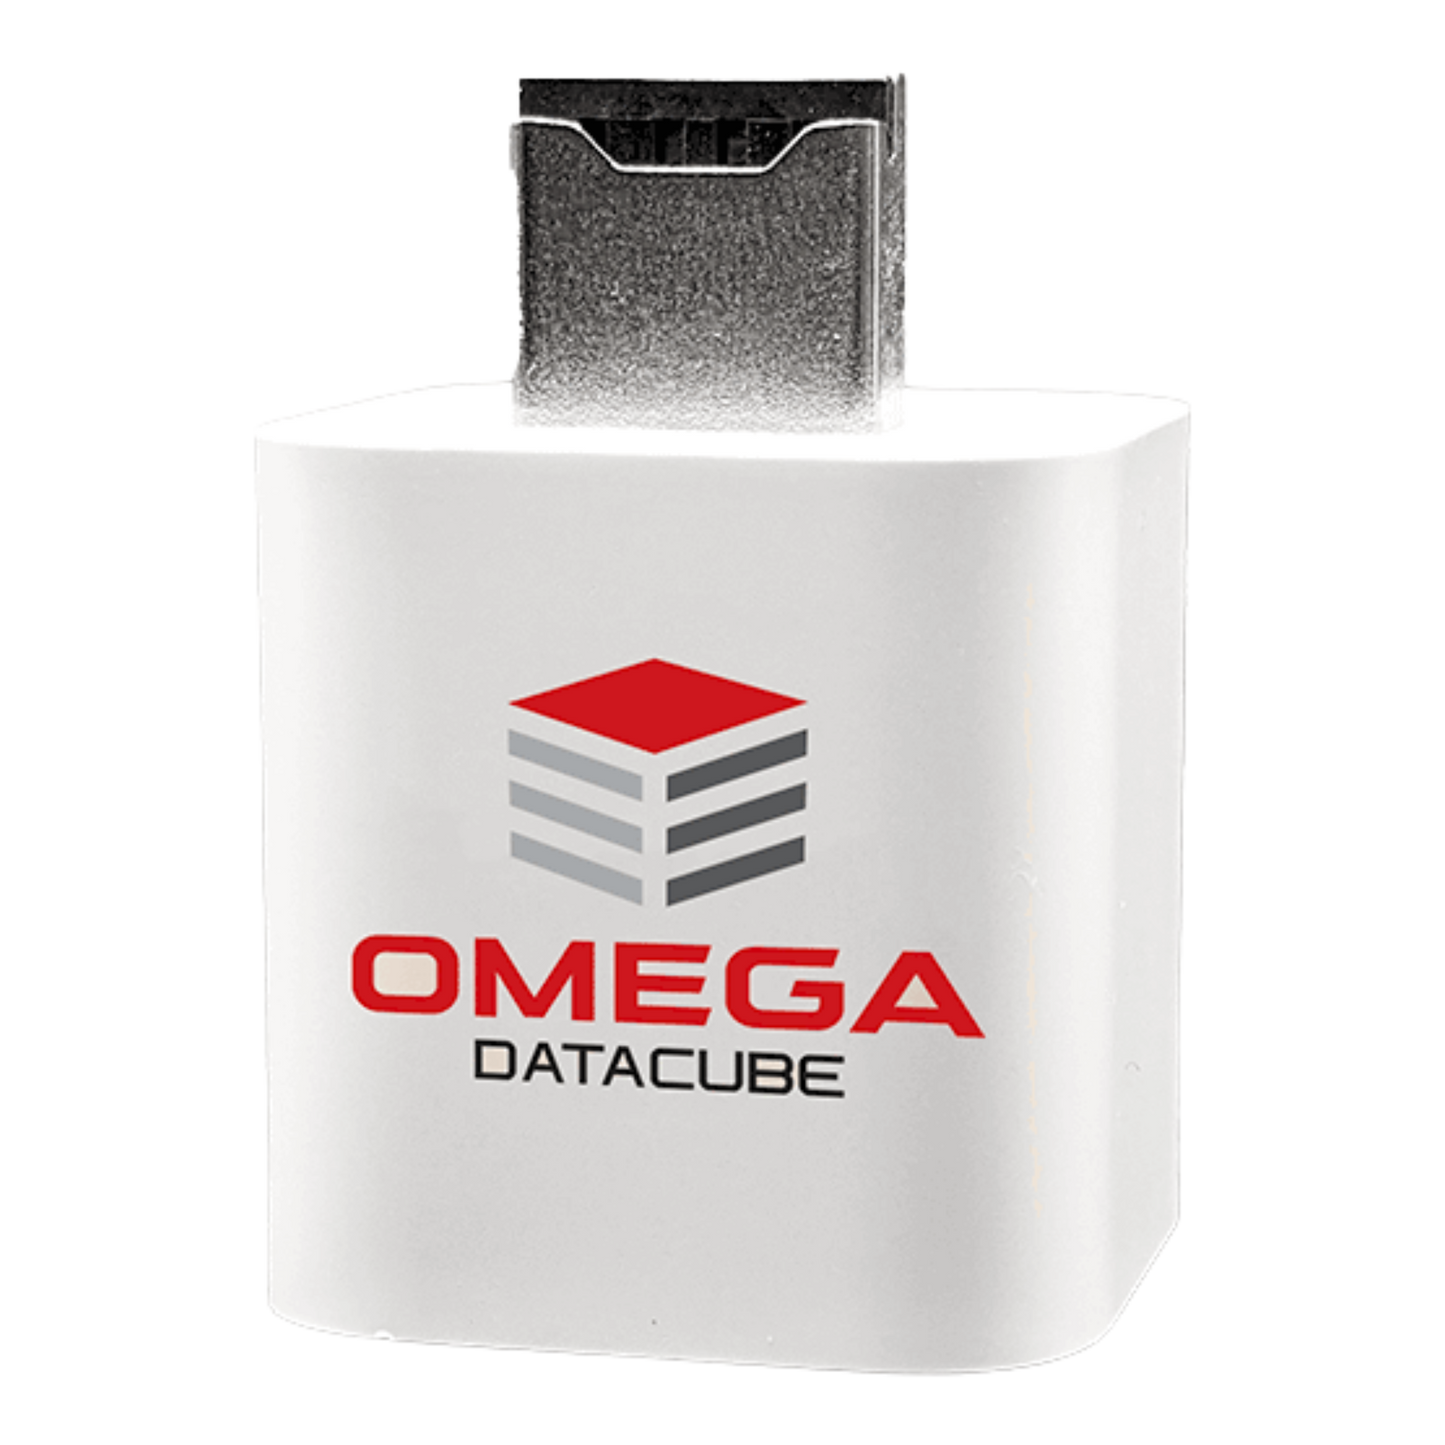 Omega DataCube - Photo & Video Backup Device